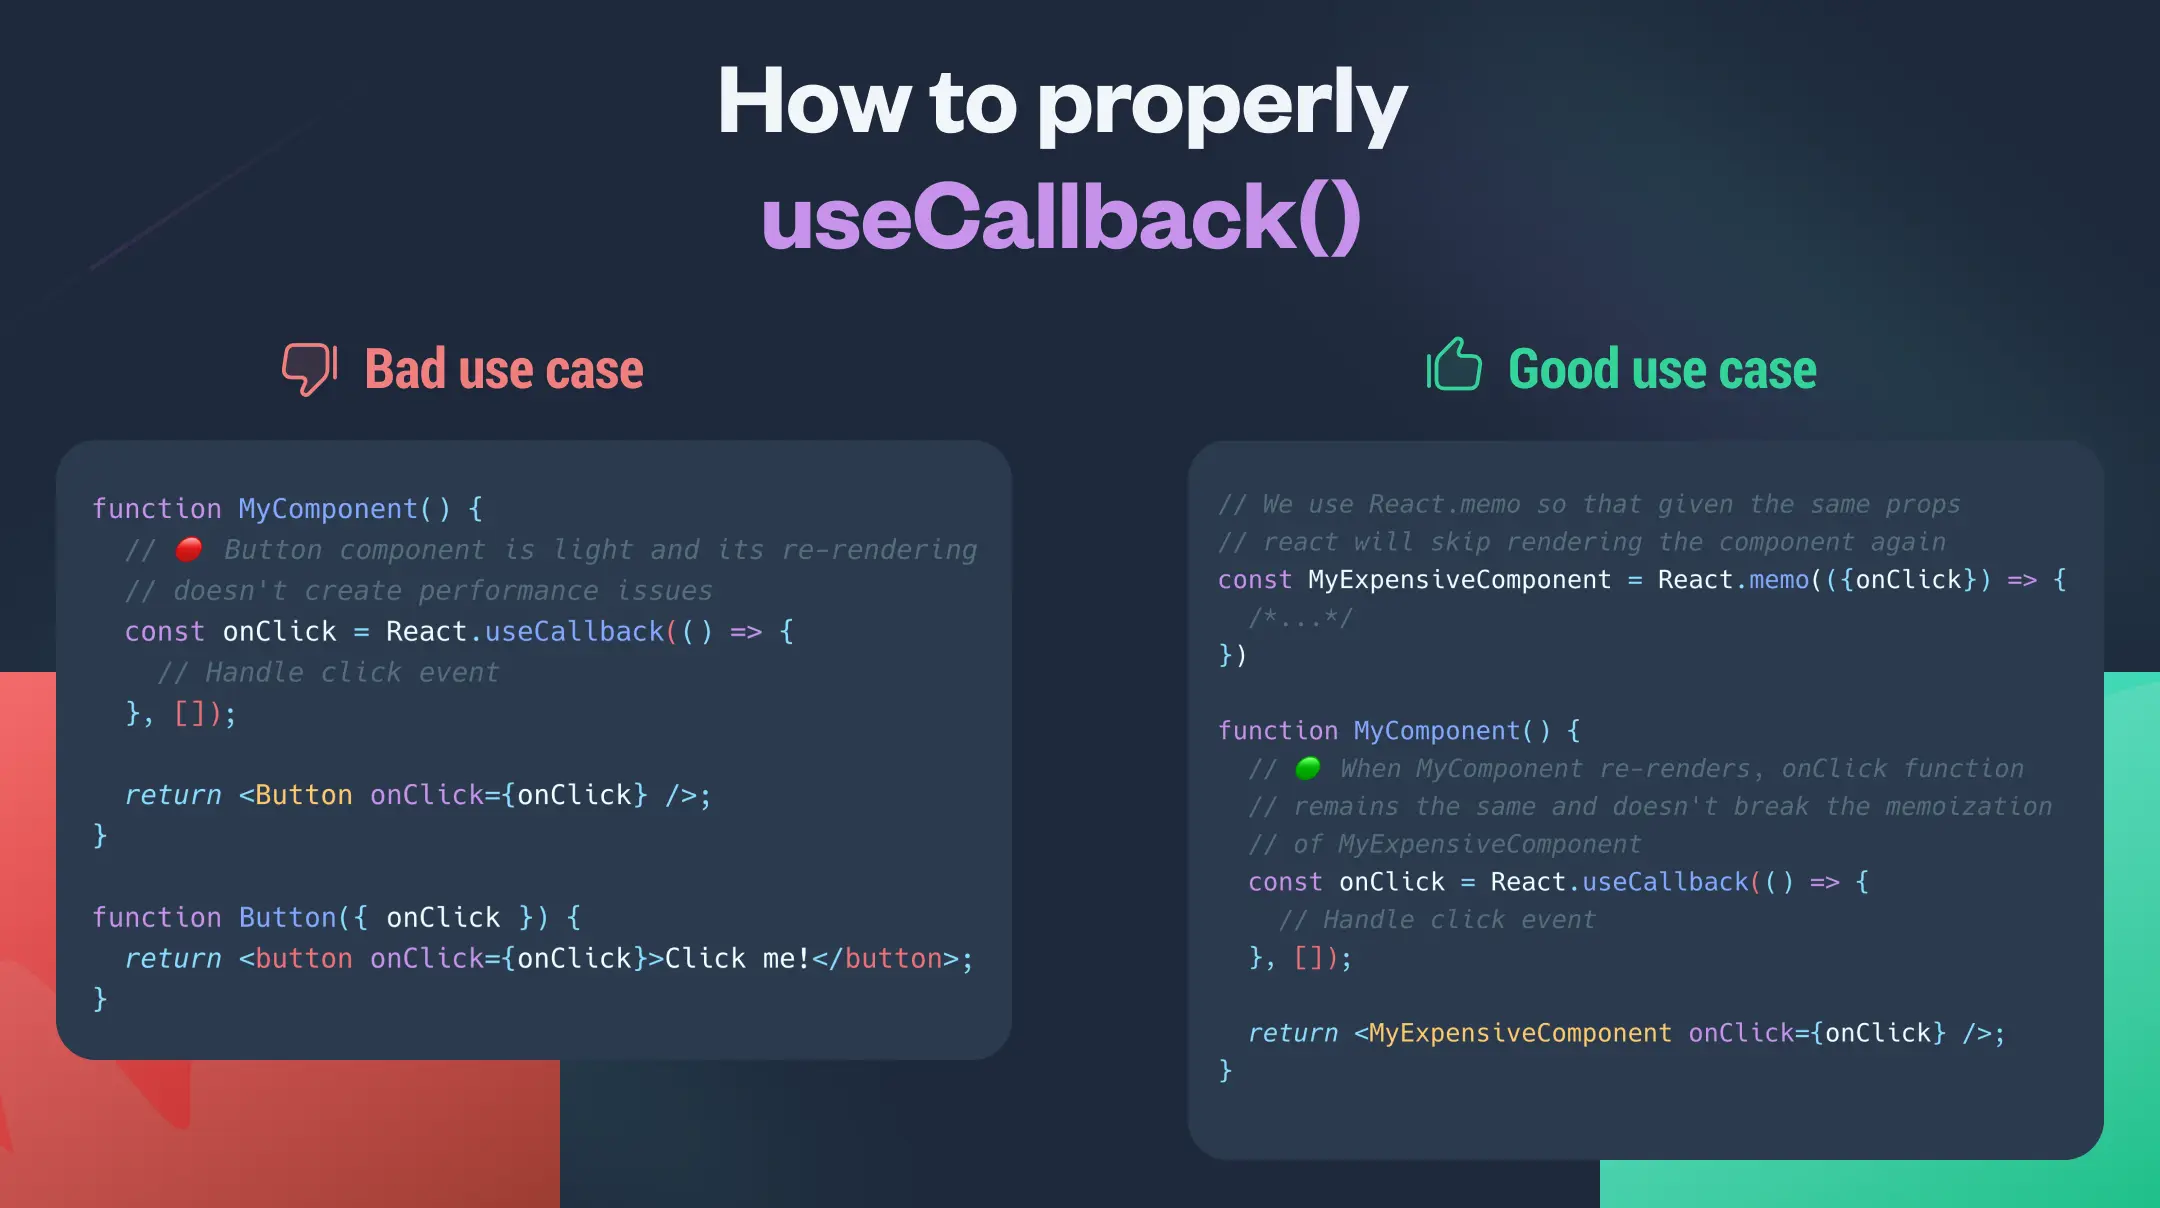 infographic explaining how to properly use useCallback hook